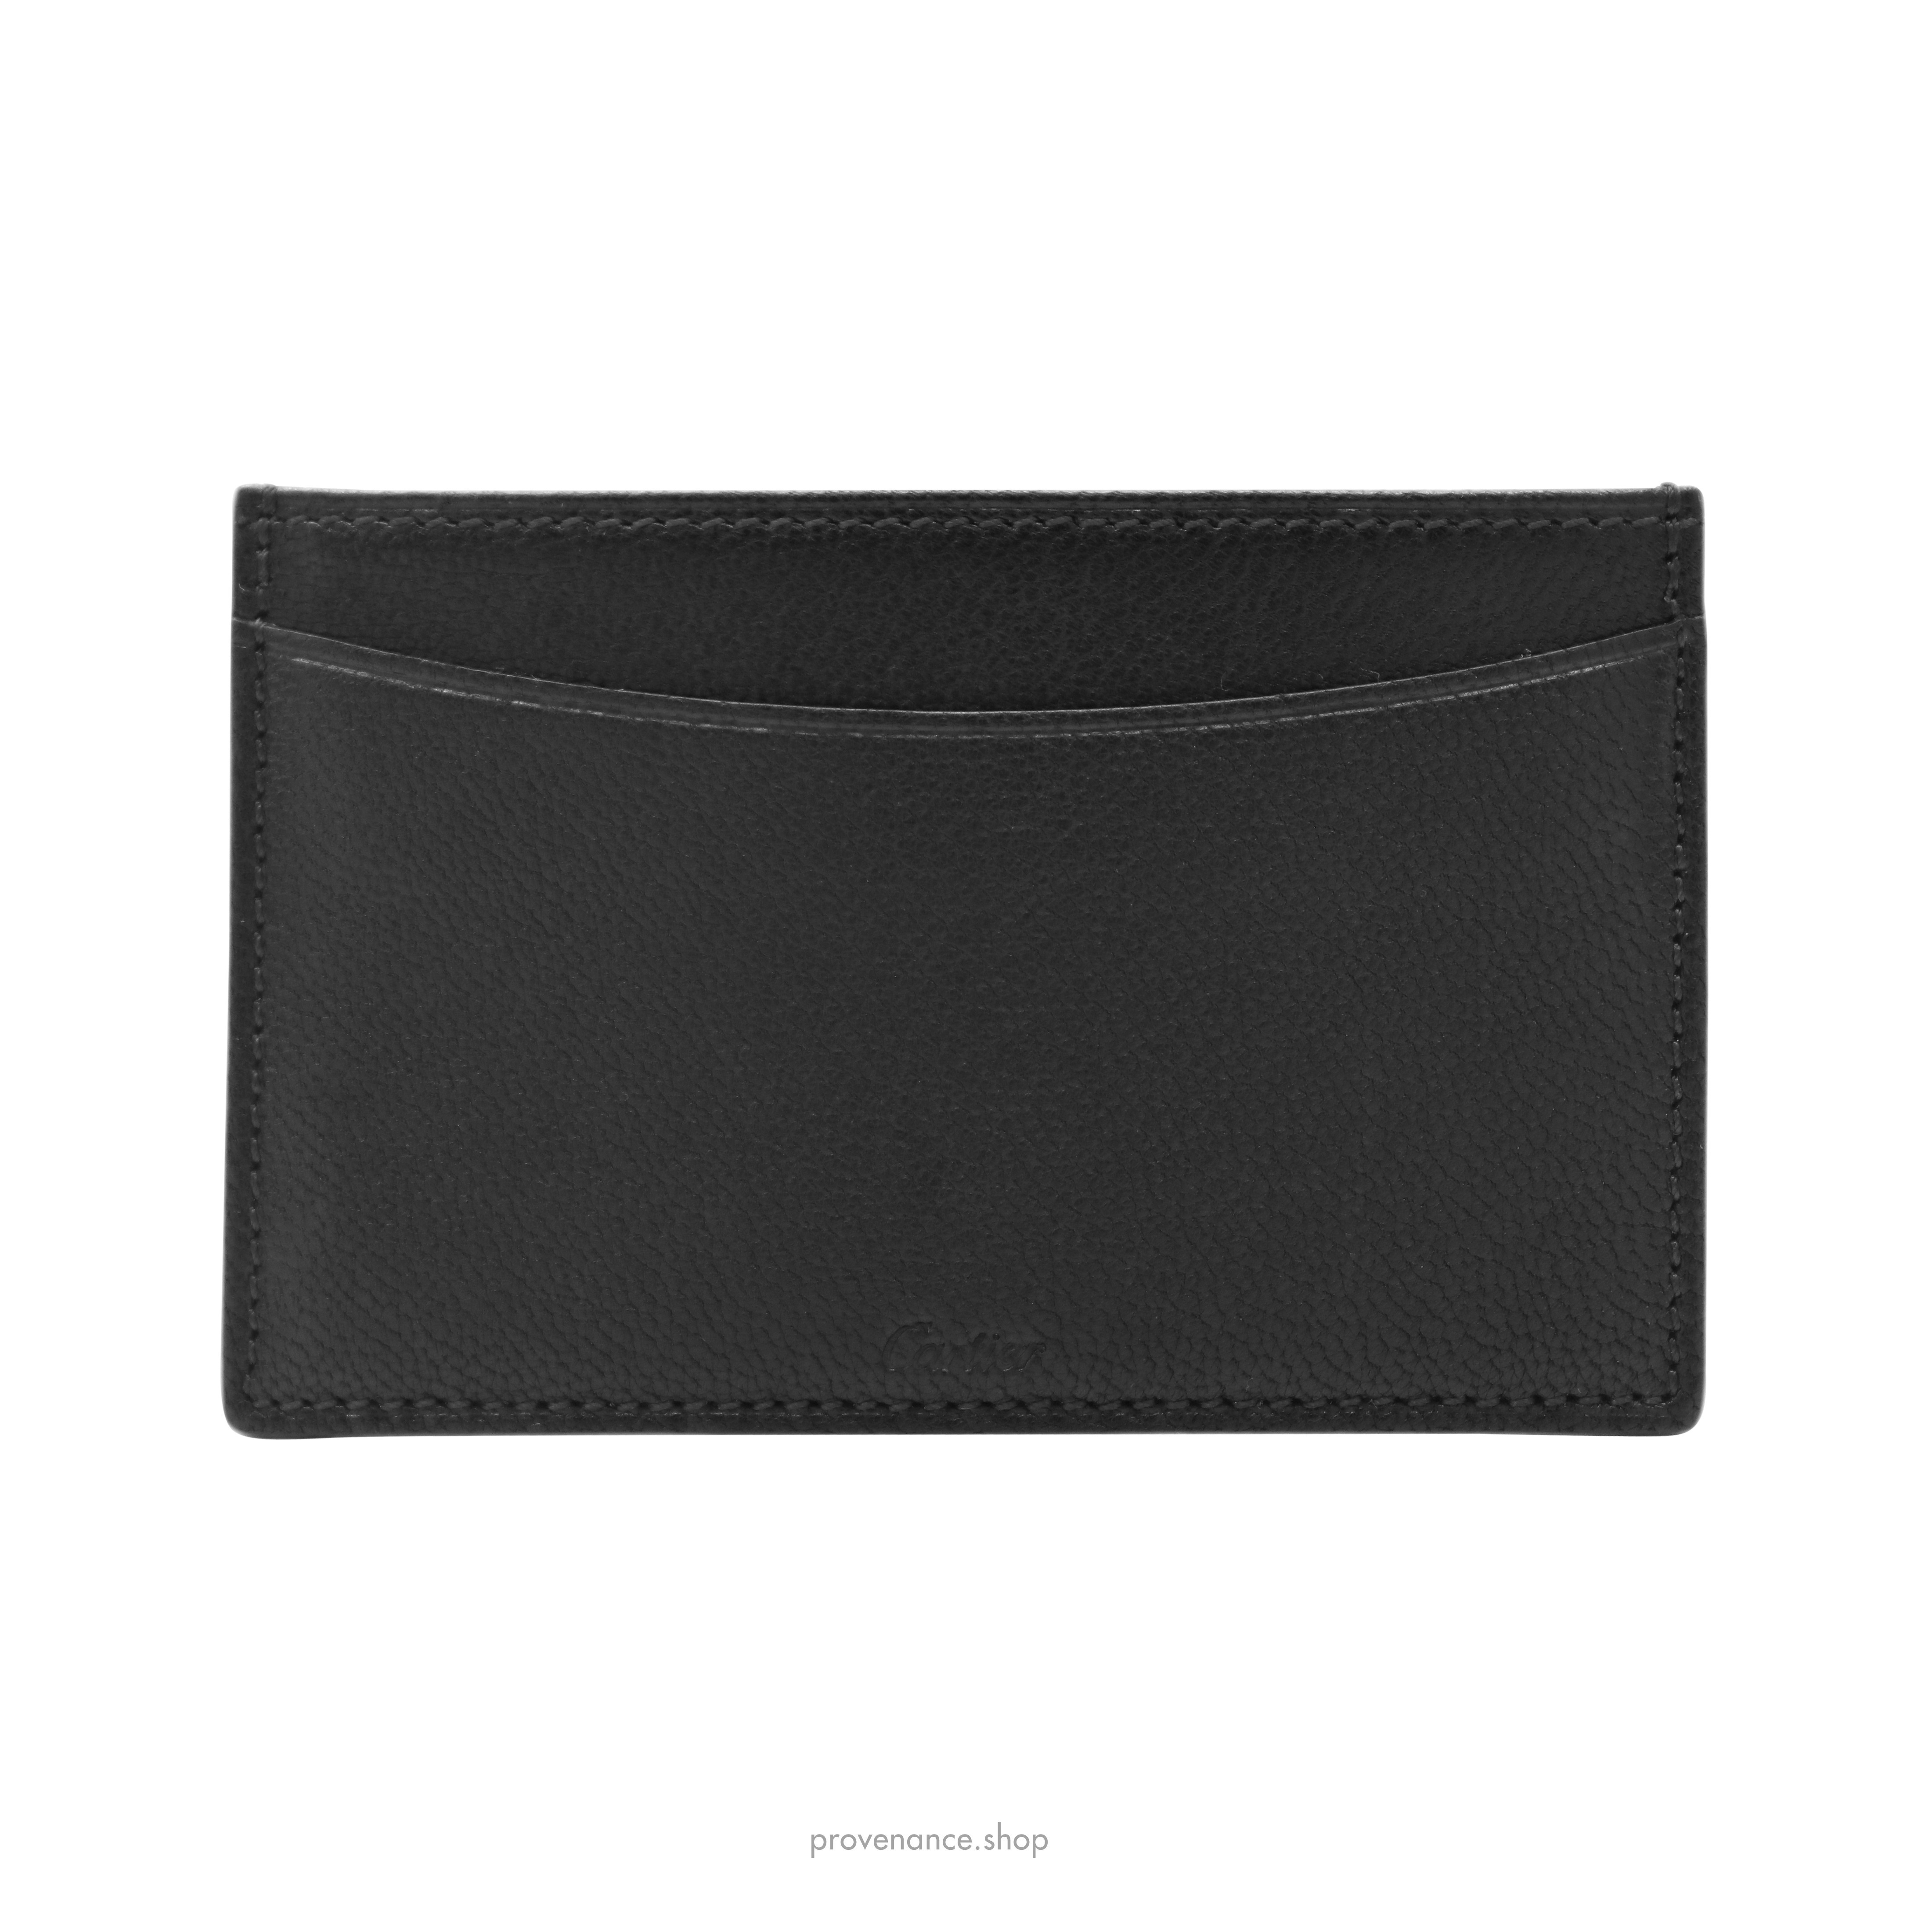 Card Holder Wallet - Black Chevre Leather - 1